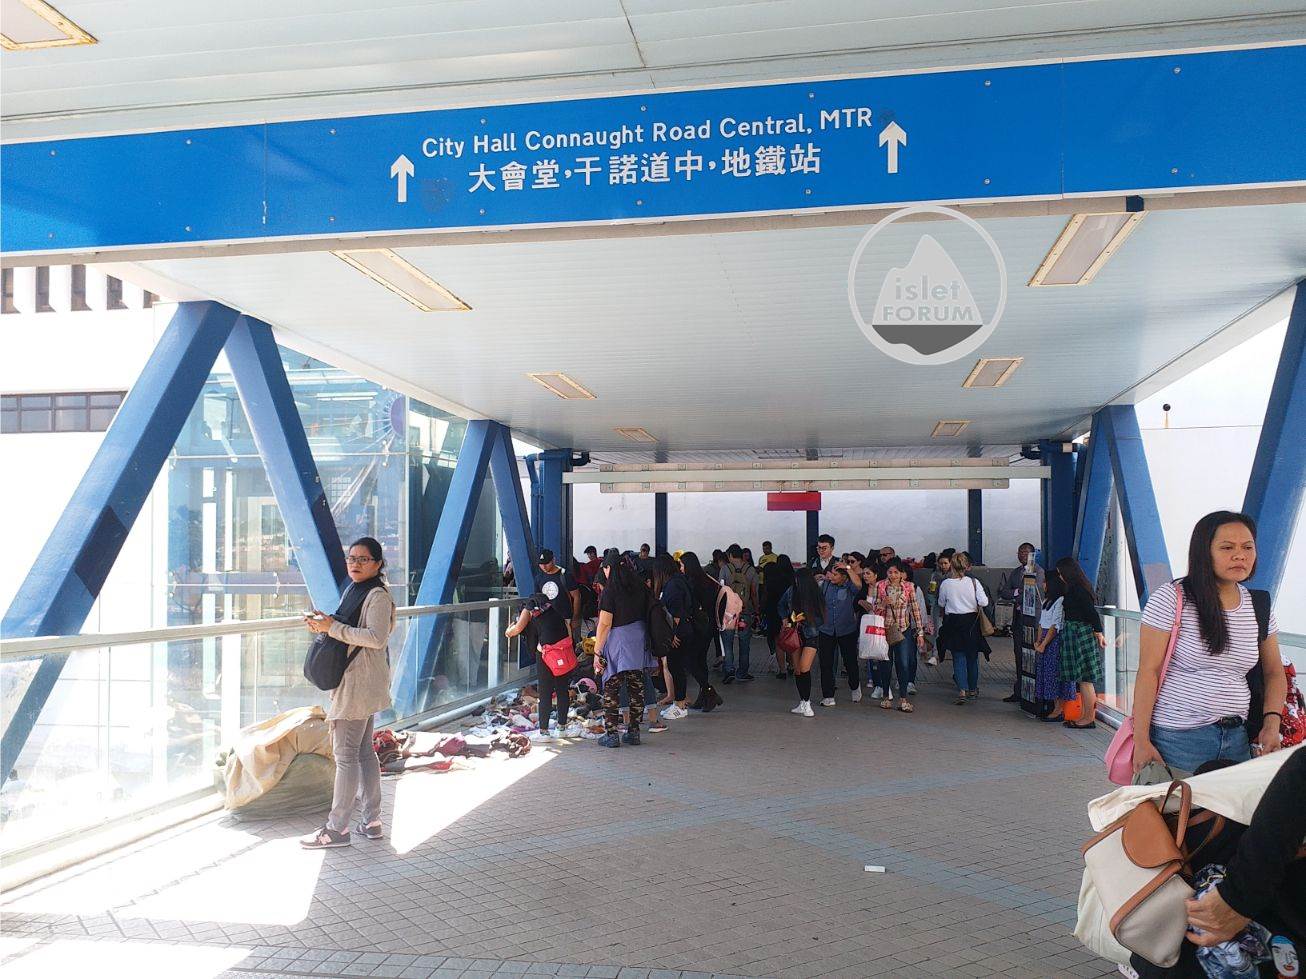 中區行人天橋系統 Central Elevated Walkway  (9).jpg